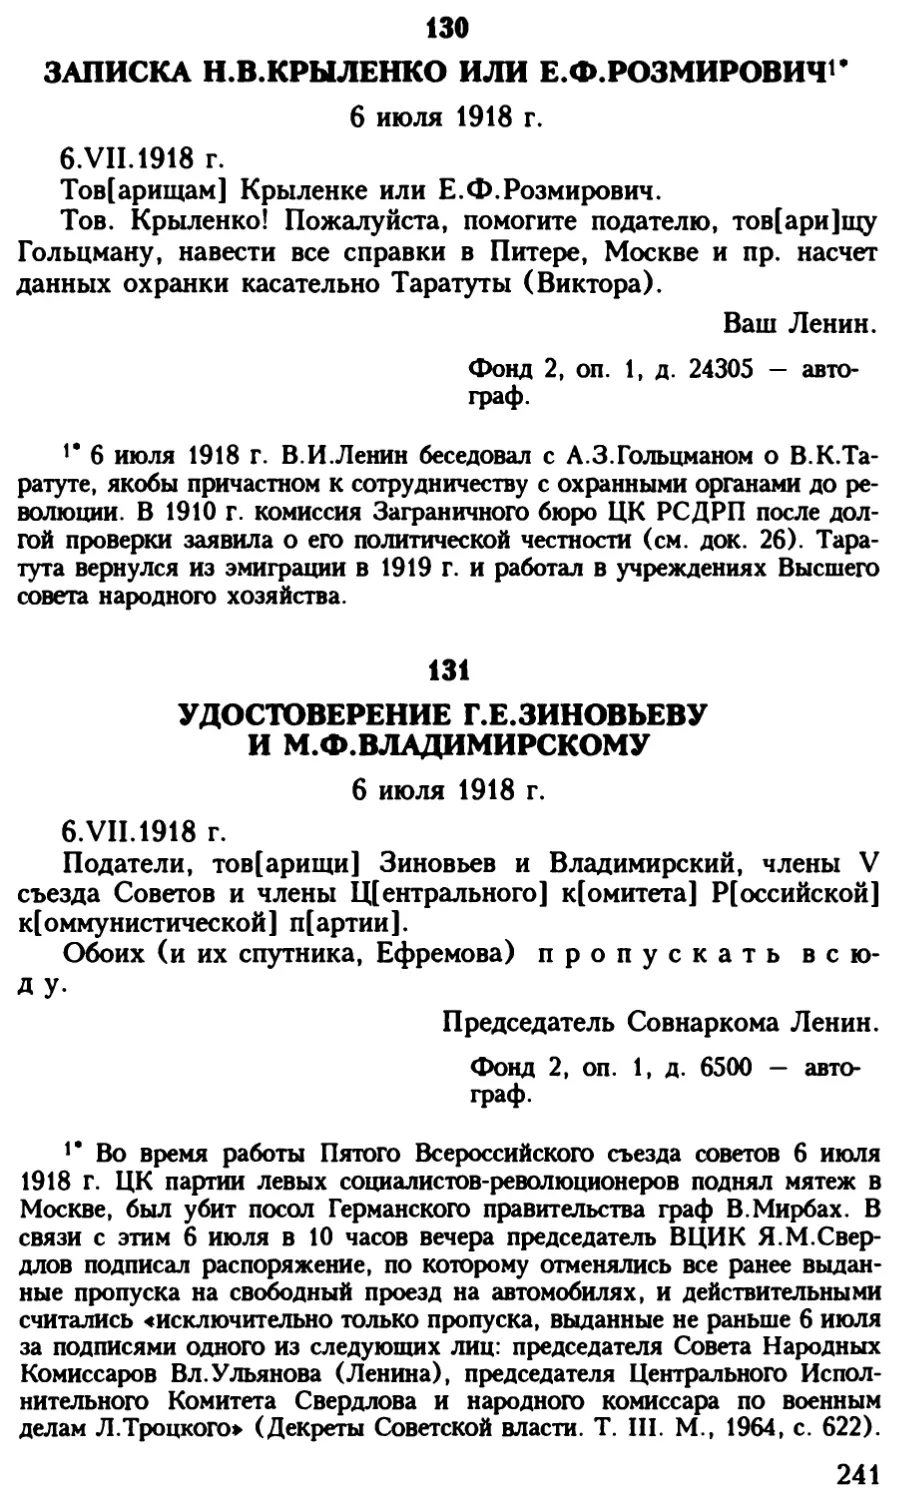 131. Удостоверение Г.Е.Зиновьеву и М.Ф.Владимирскому. 6 июля 1918 г